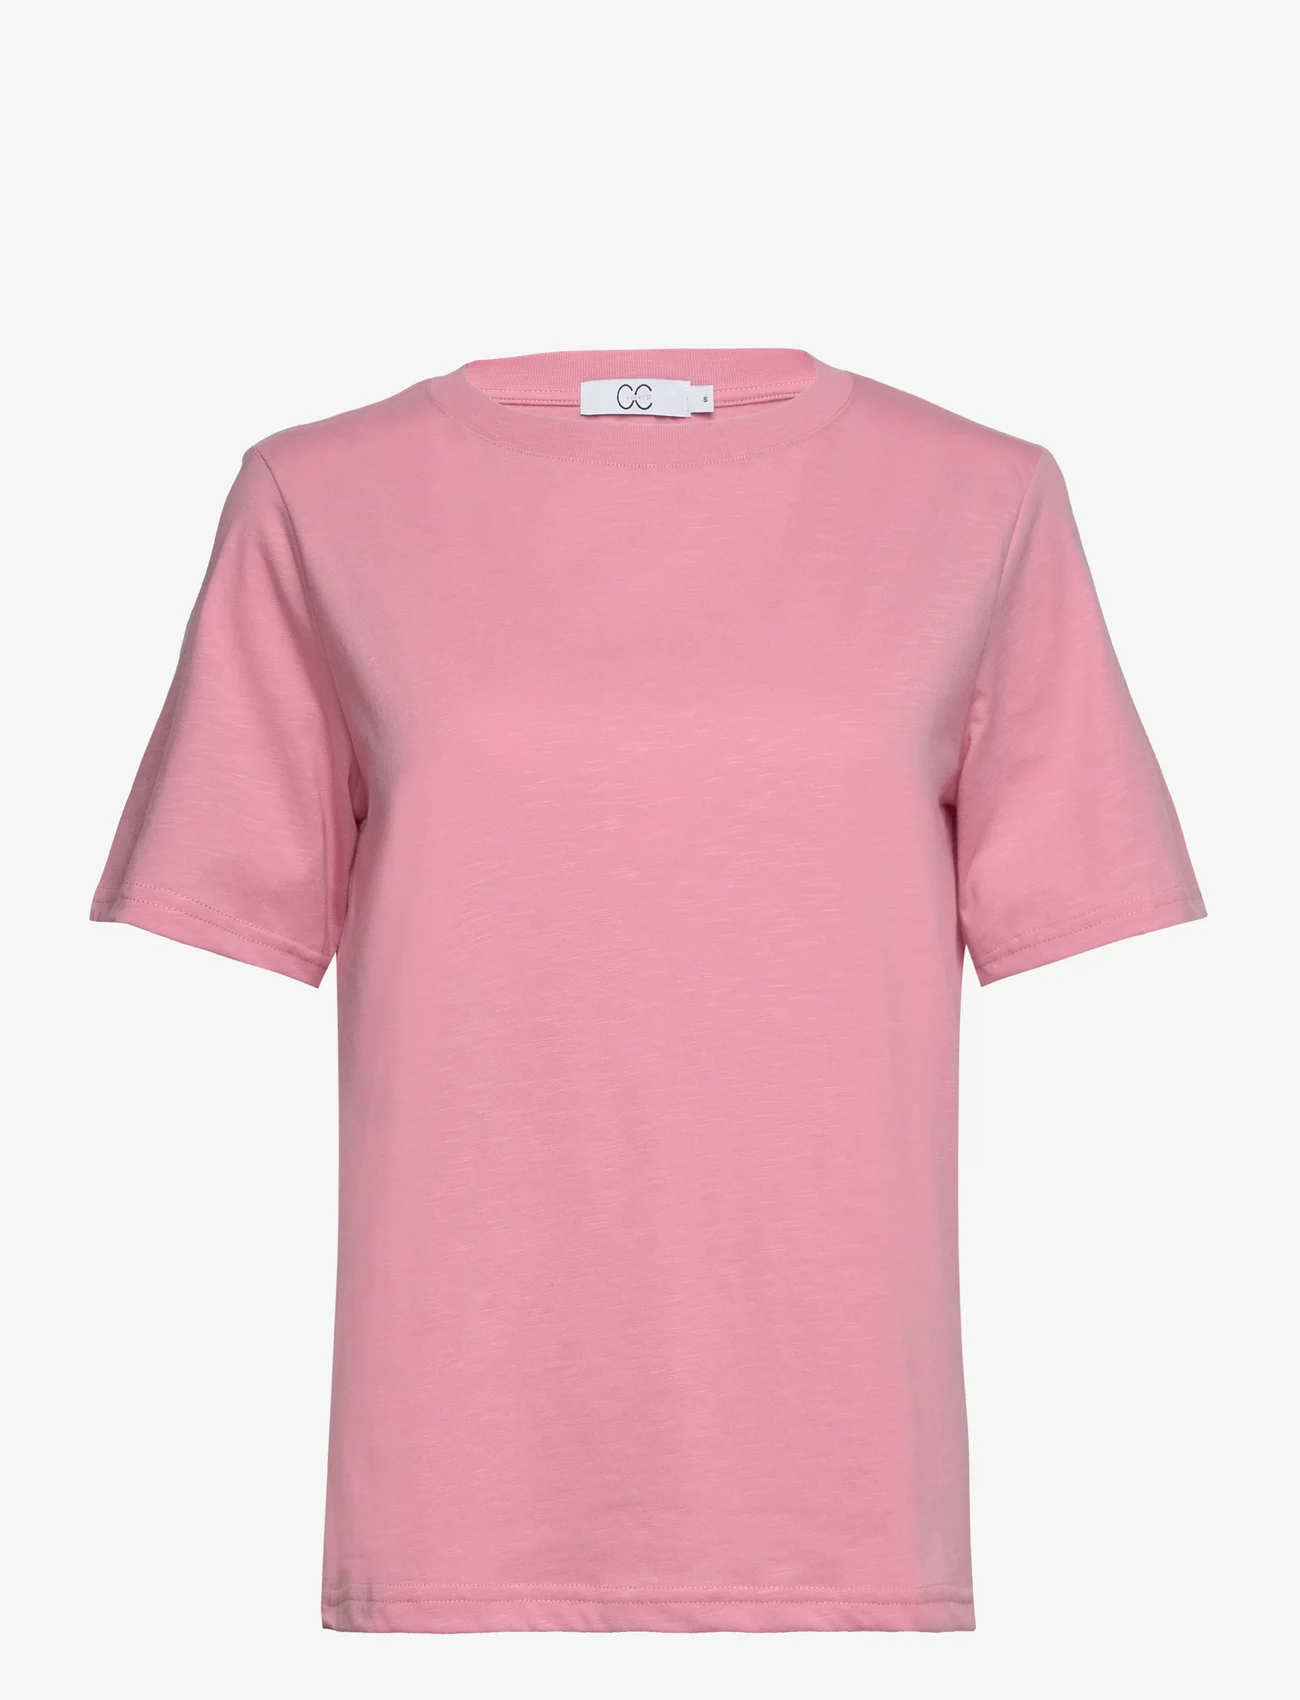 Coster Copenhagen - CC Heart regular t-shirt - zemākās cenas - dust pink - 0